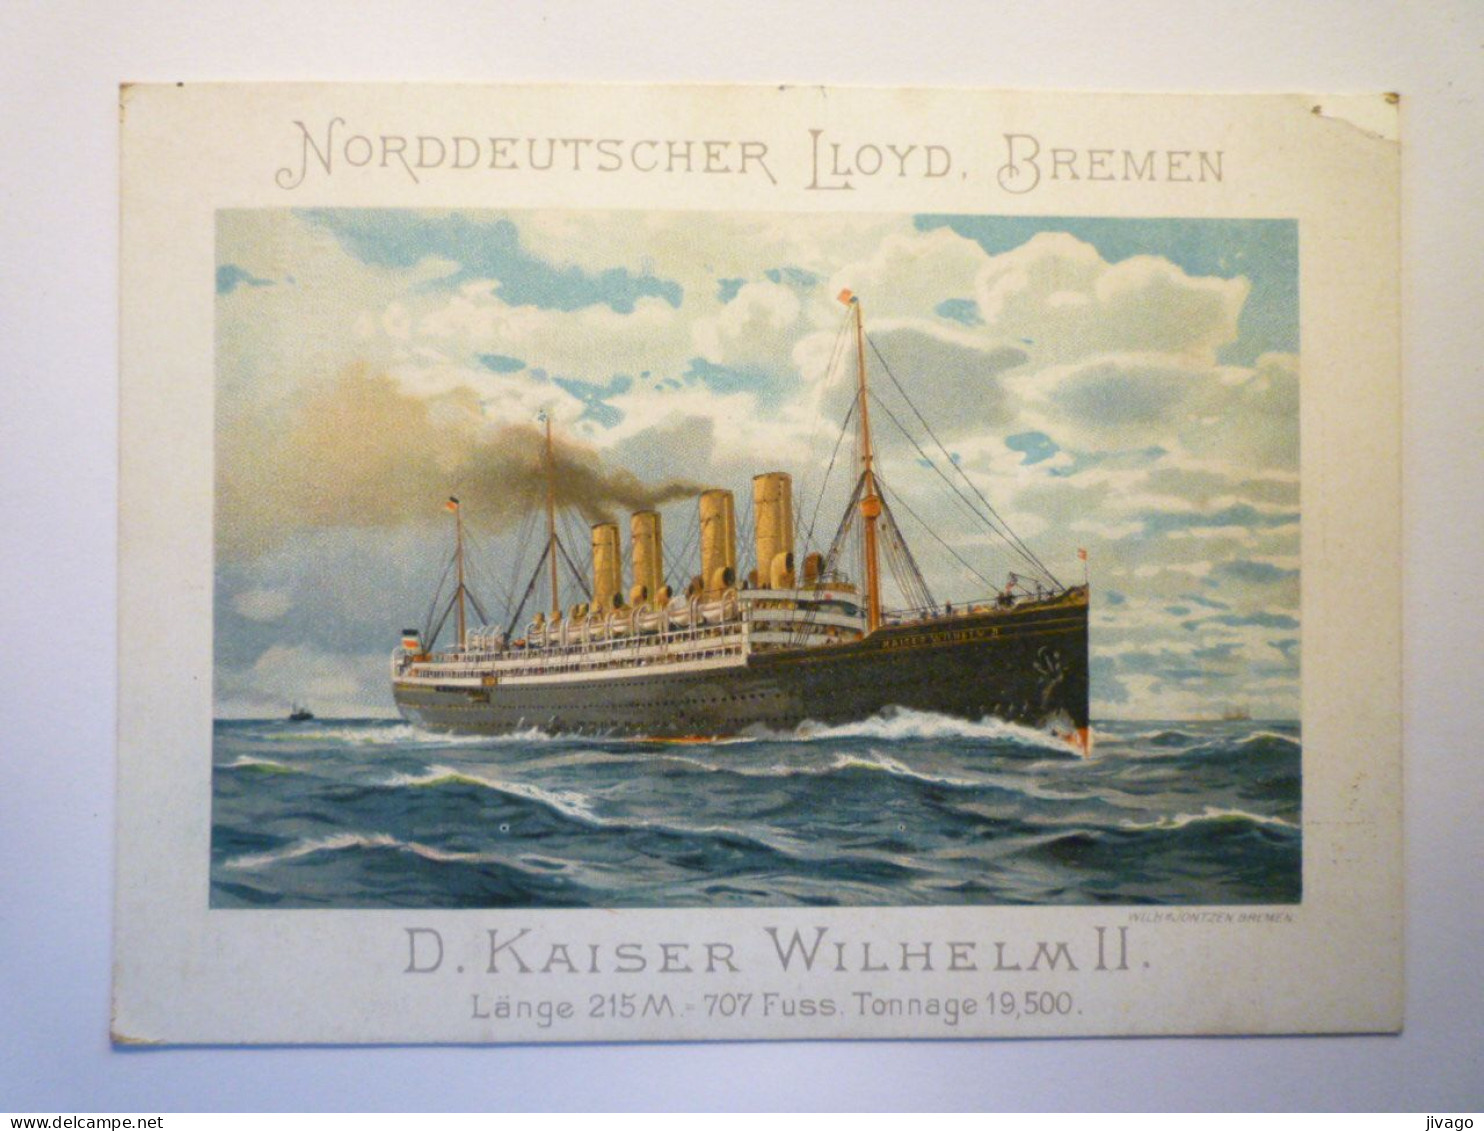 2023 - 3323  NORDDEUTSCHER LLOYD  -  BREMEN  D. KAISER WILHELM II   CONCERT PROGRAMM   1907   XXX - Programmes